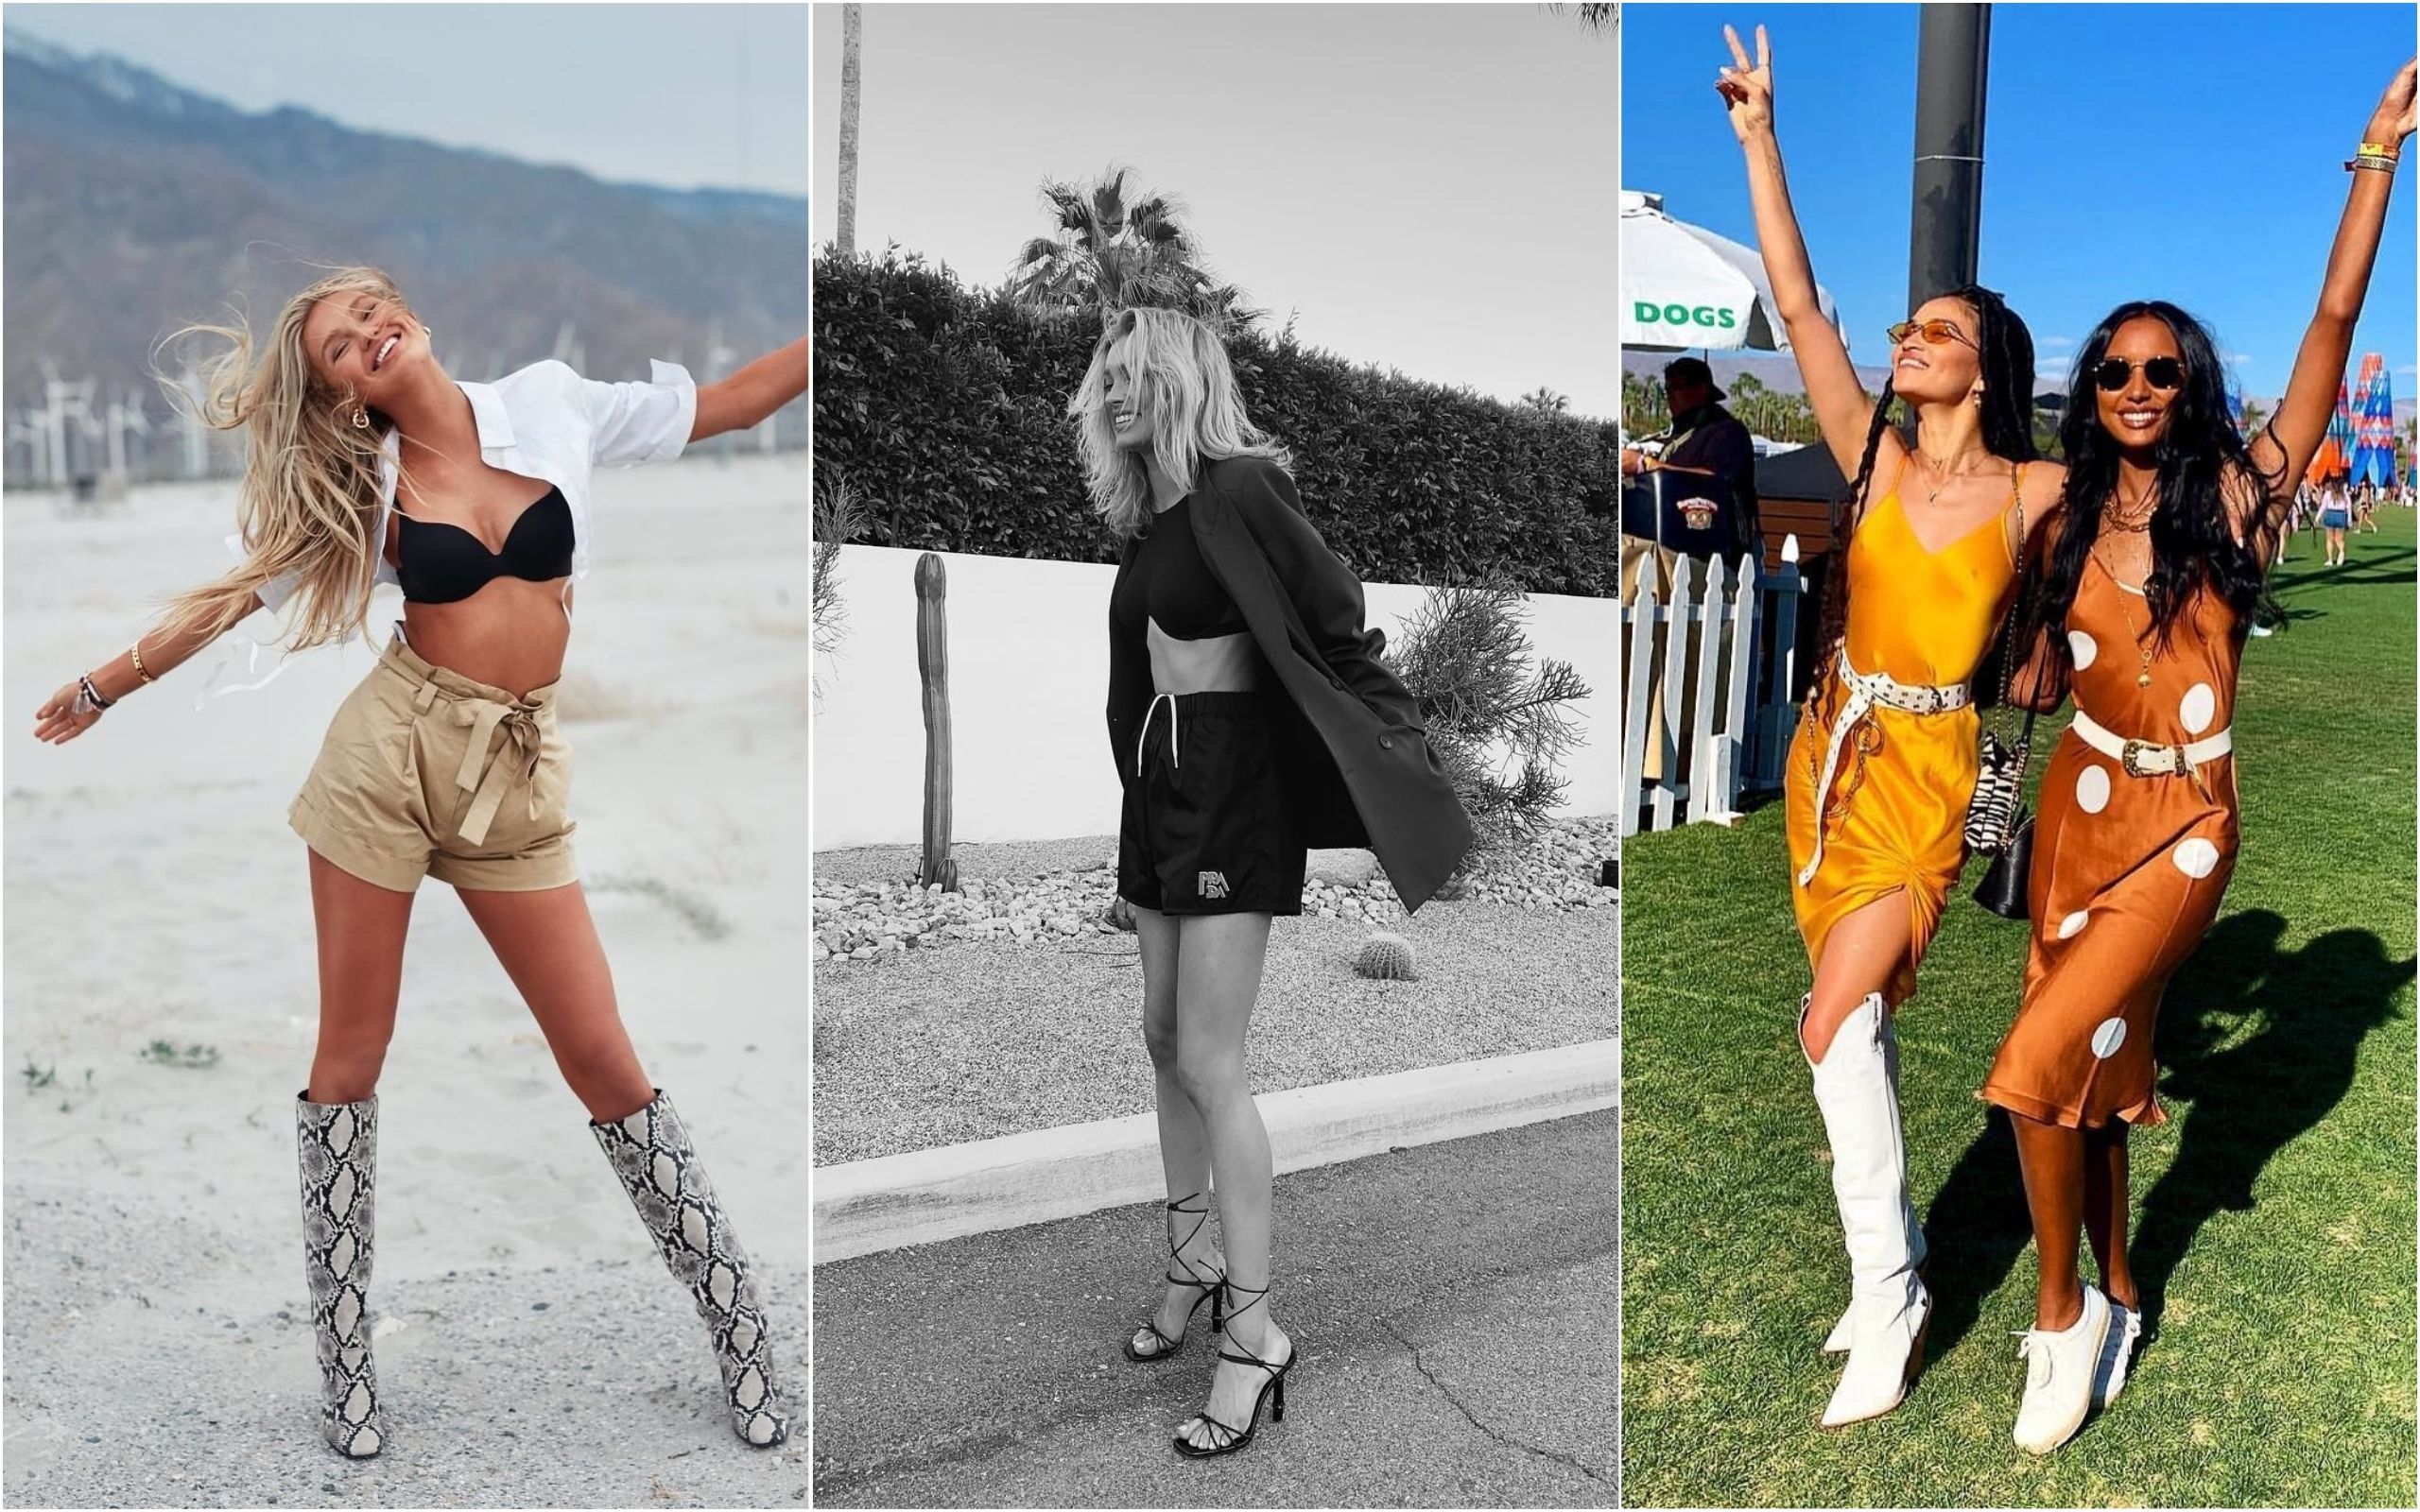 Эльза Хоск, Жасмин Тукс, Роме Стрейд и другие модели посетили фестиваль Coachella: фотоподборка